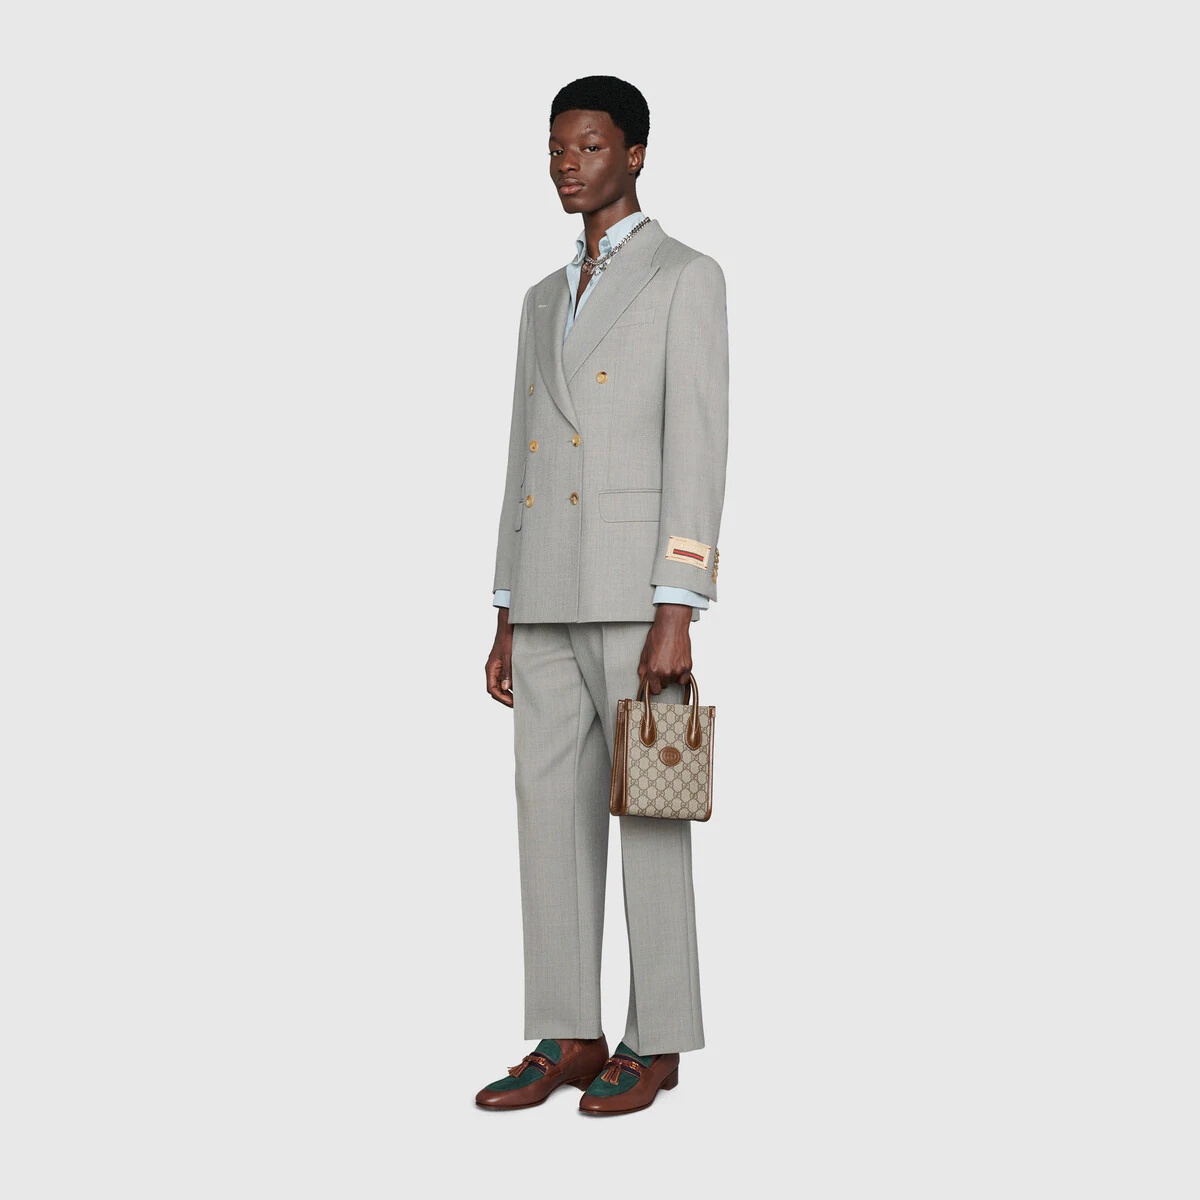 Mini tote bag with Interlocking G in beige and white GG Supreme